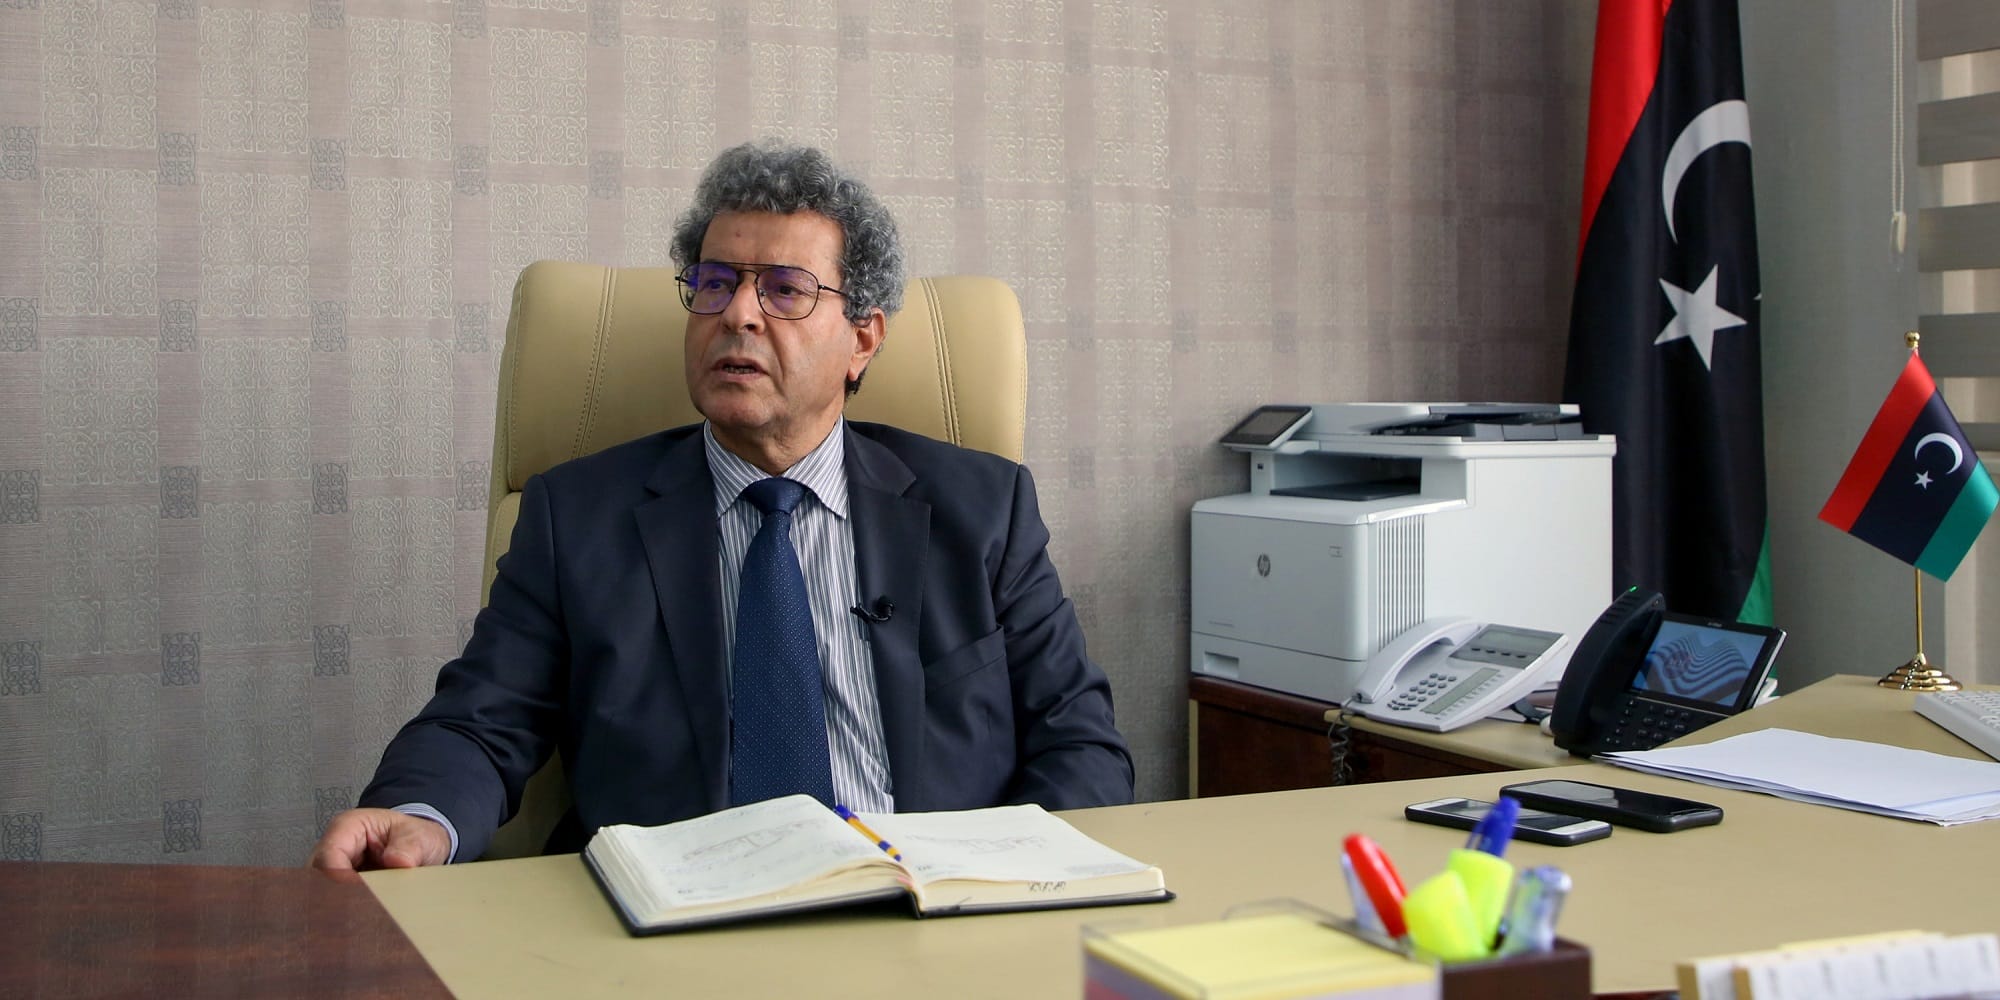 Ο Μοχάμεντ Αούν, υπουργός της κυβέρνησης της Τρίπολης στη Λιβύη